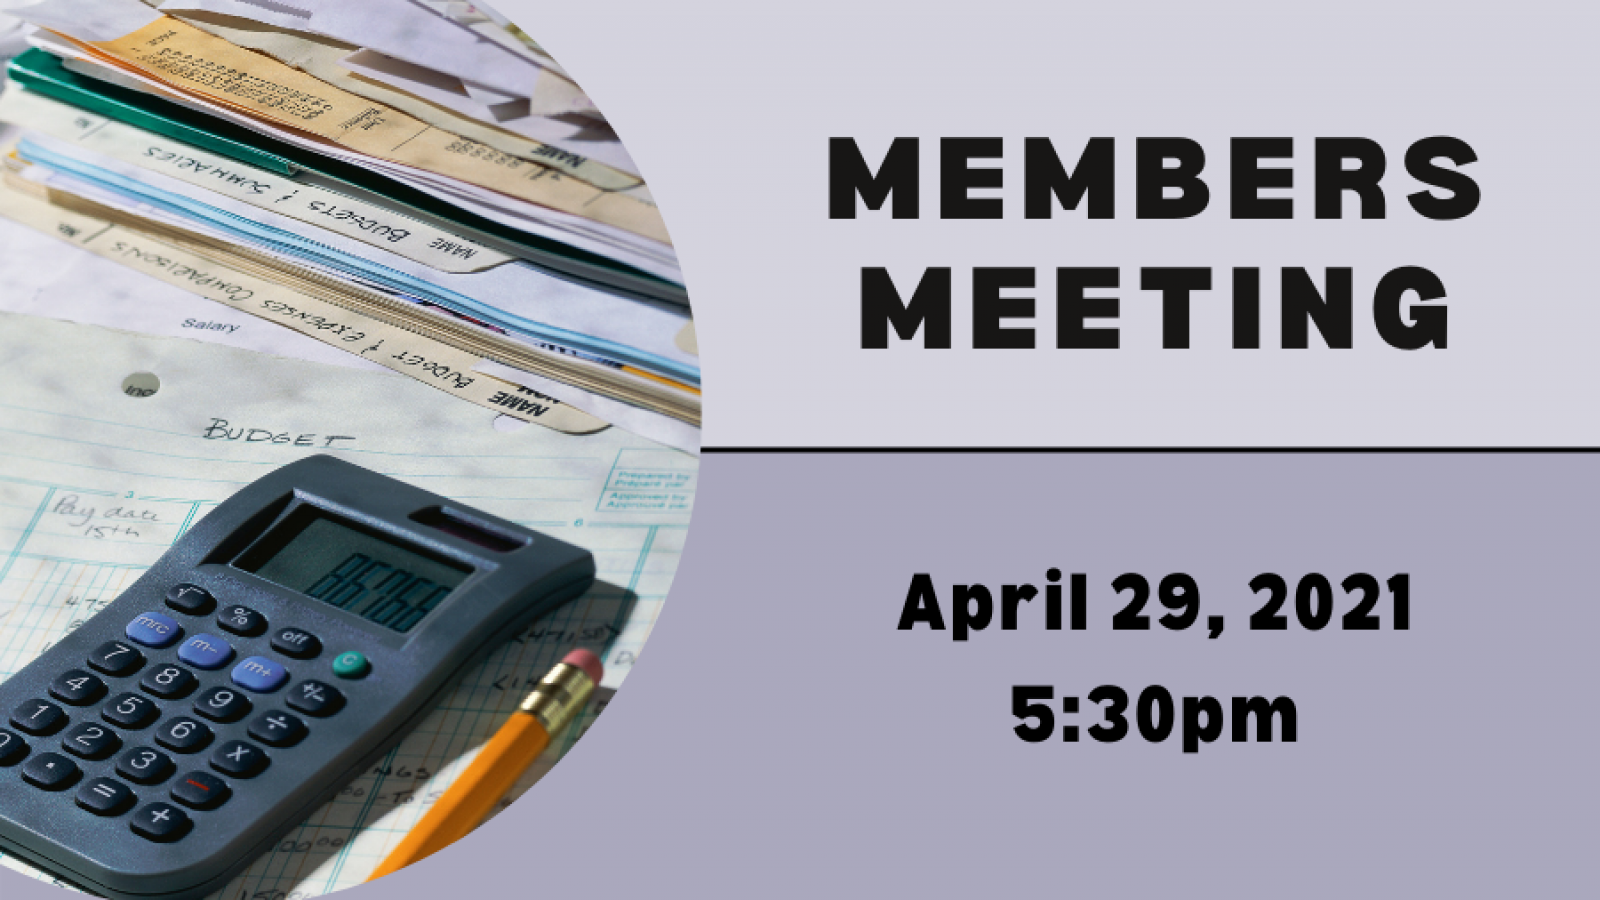 Members Meeting April 29, 2021 at 5:30pm, online